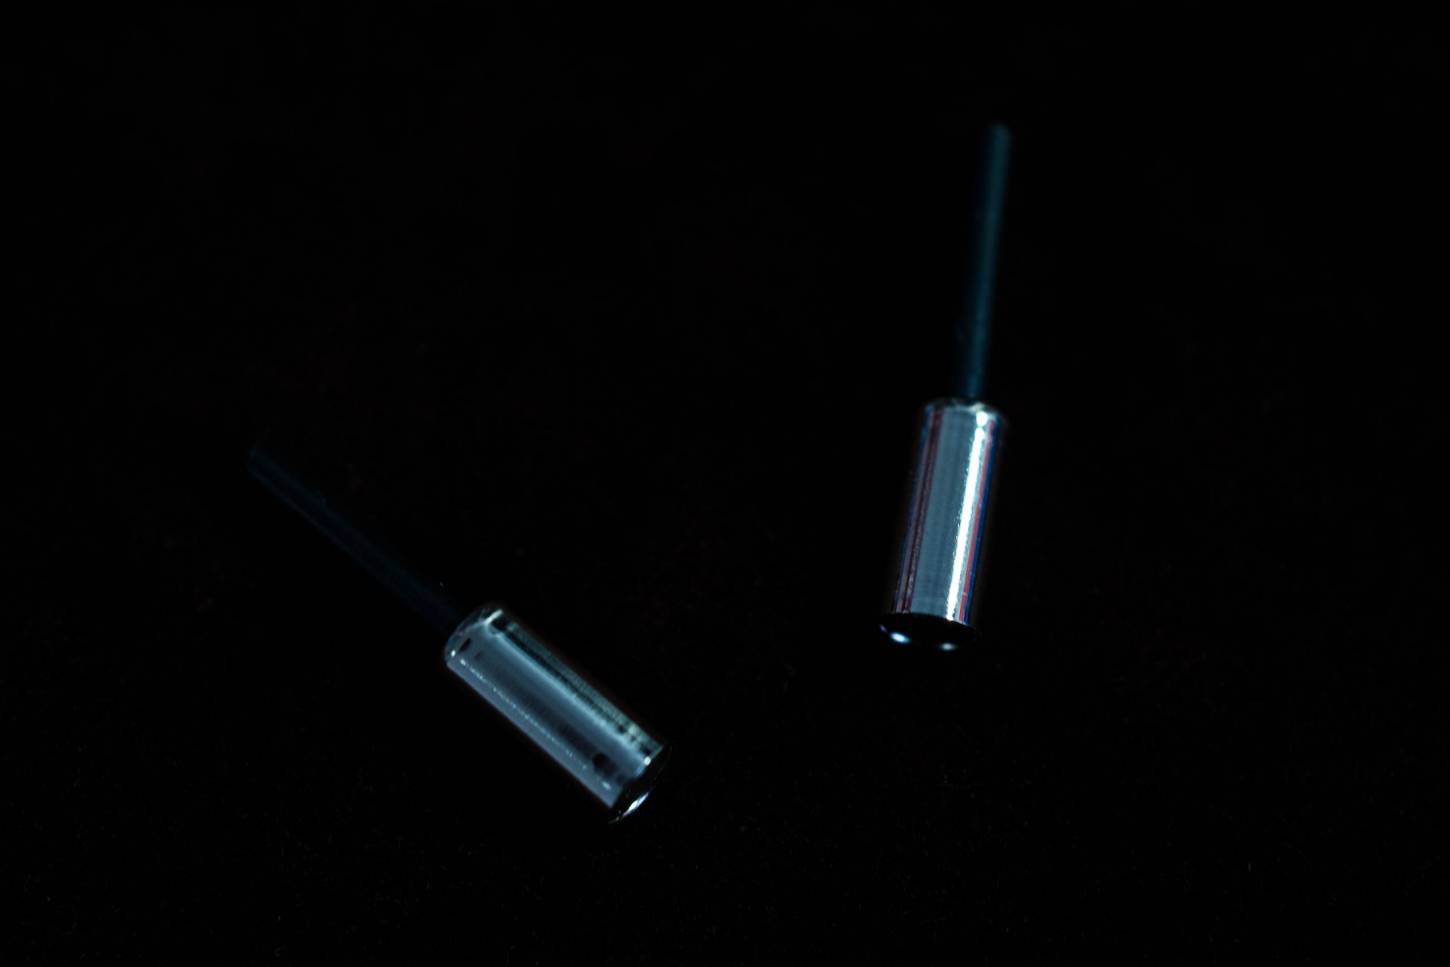 2x Shimano Messing Endkappen mit Liner für 5 mm Ø Bremszugaußenhülle in silber verchromt